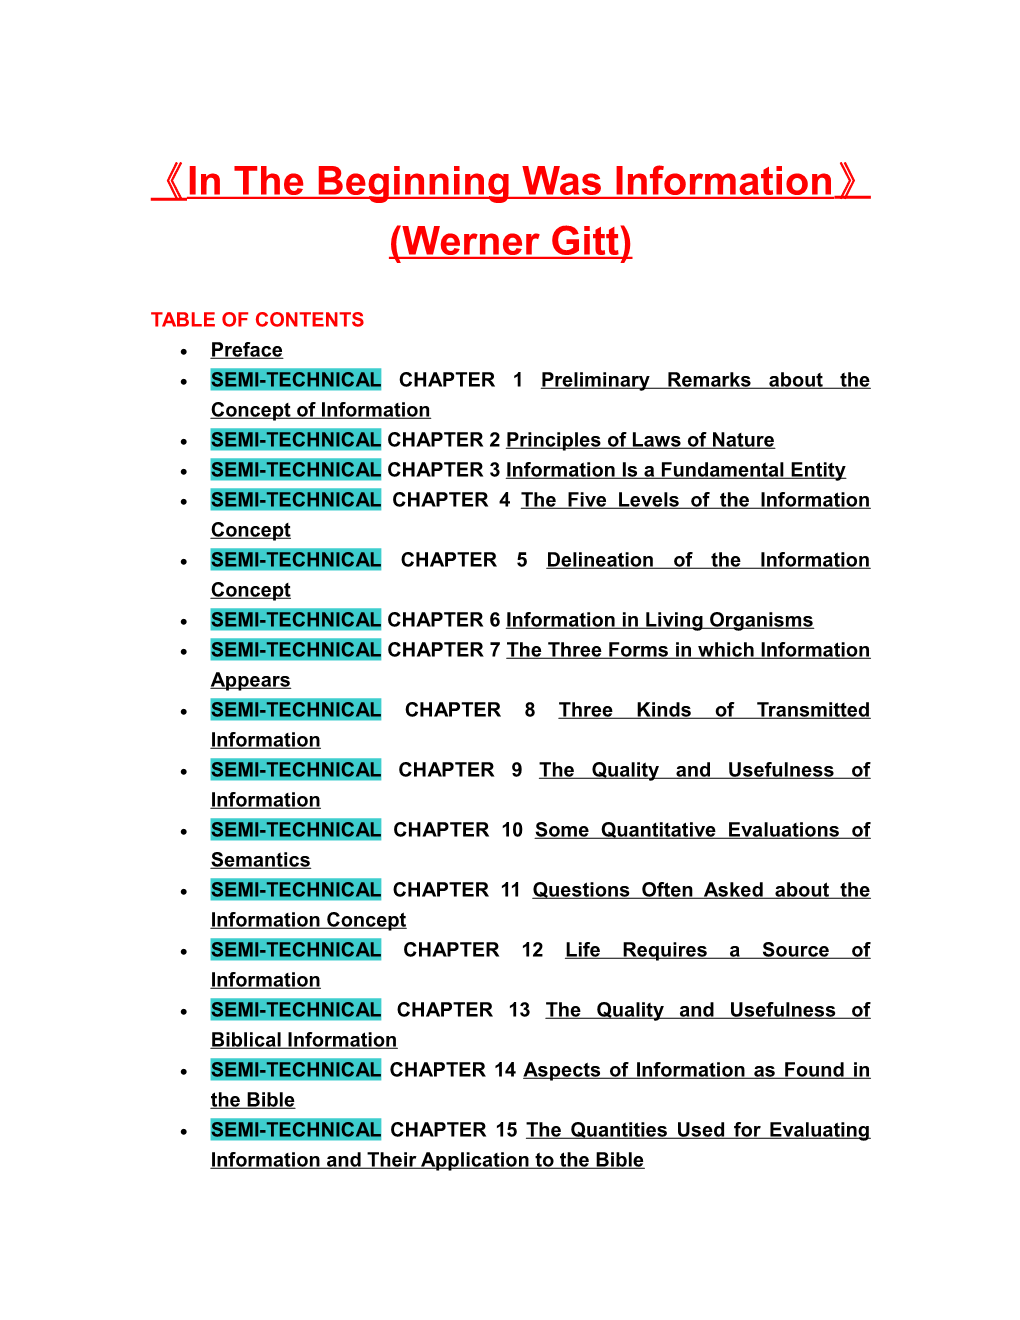 In the Beginning Was Information (Werner Gitt)